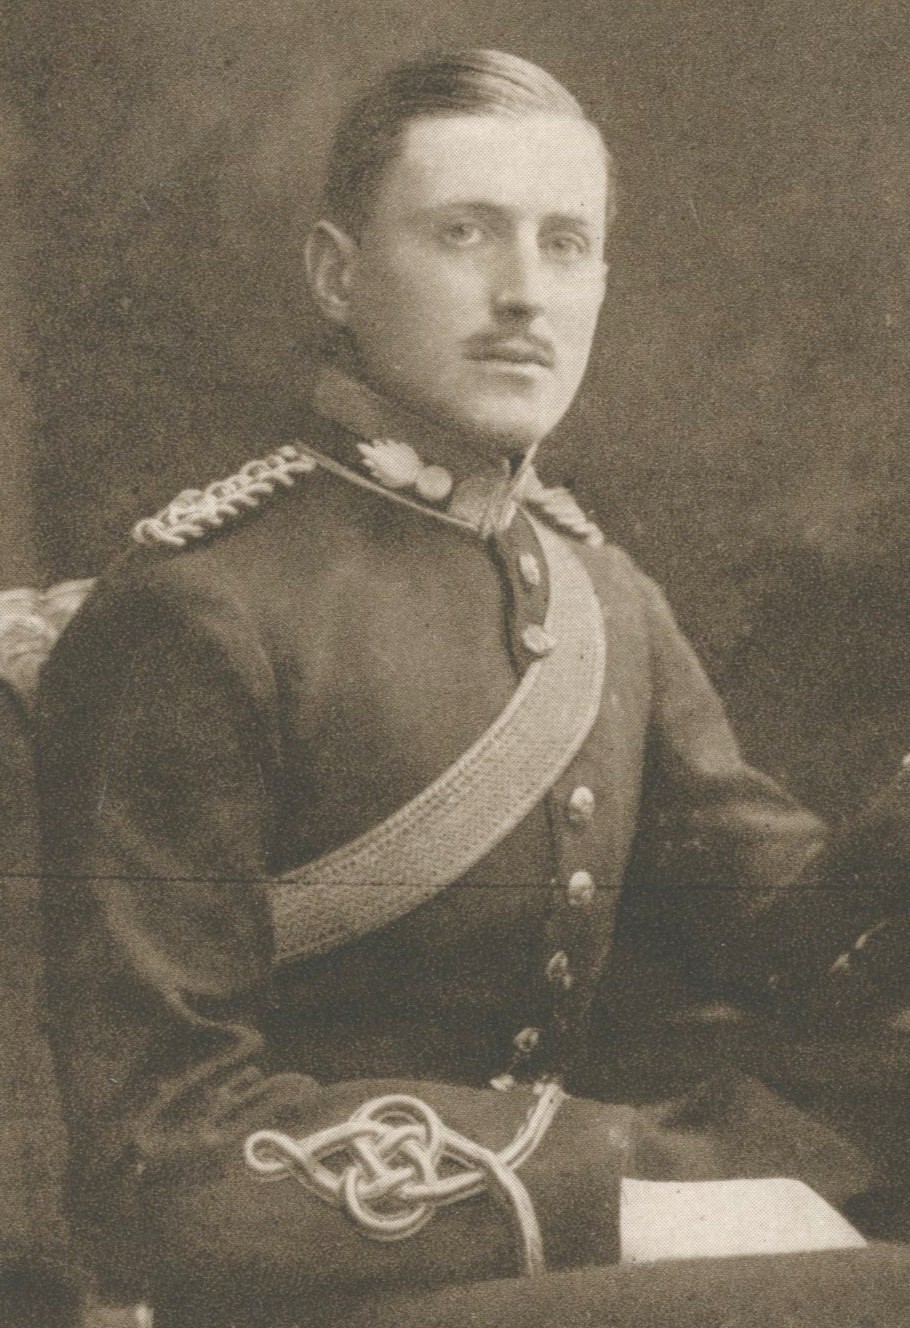 Augustus George Hess